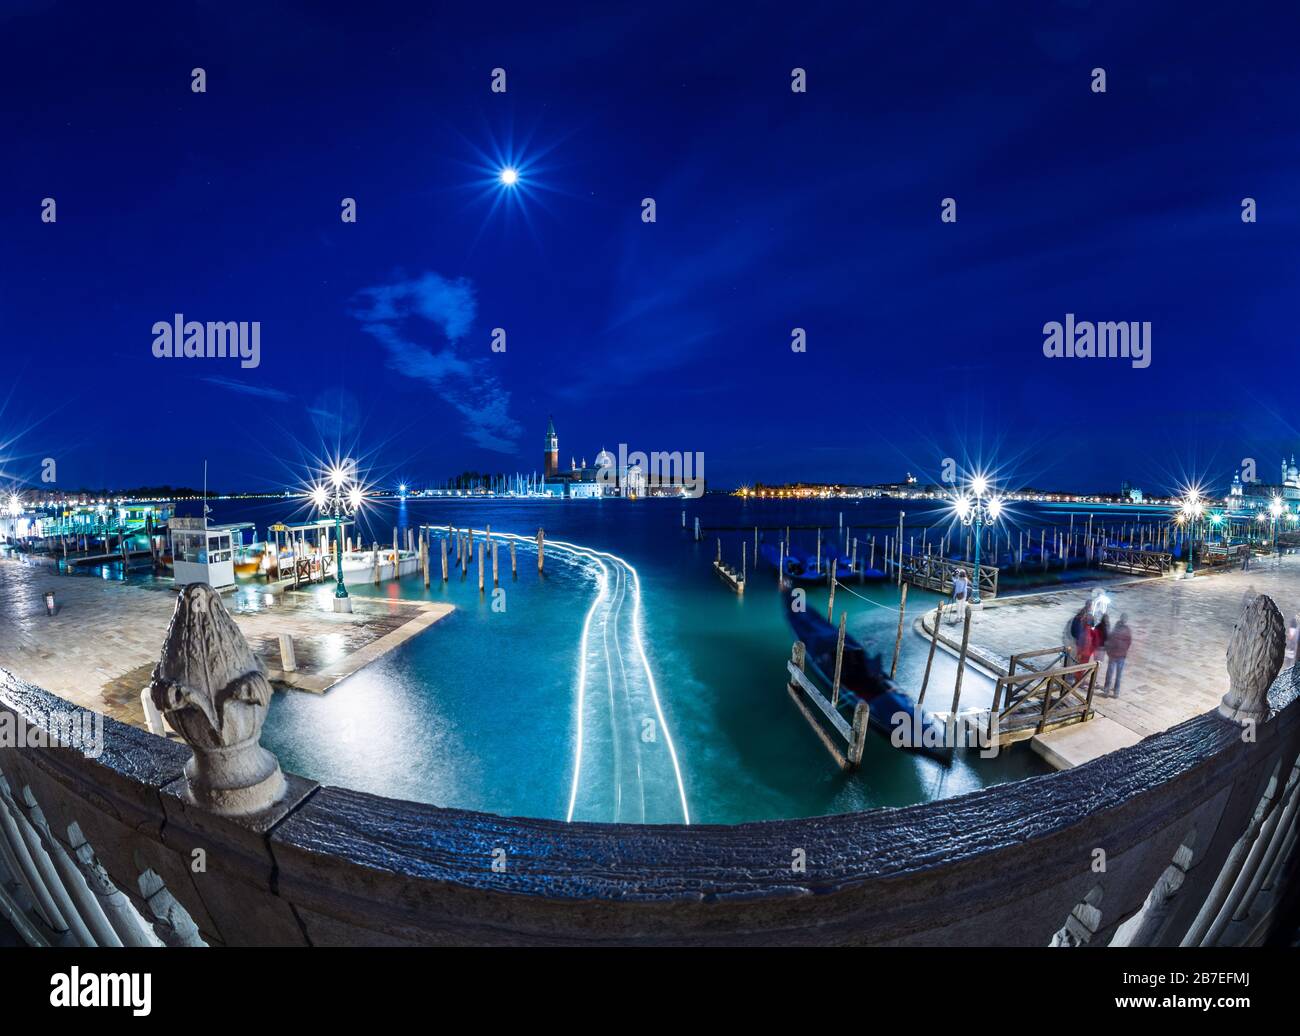 Venise, Italie - 16 MAI 2019: Vue nocturne de Gondolas près de la place St Marc à Venise avec l'église de San Giorgio Maggiore sur le fond Banque D'Images